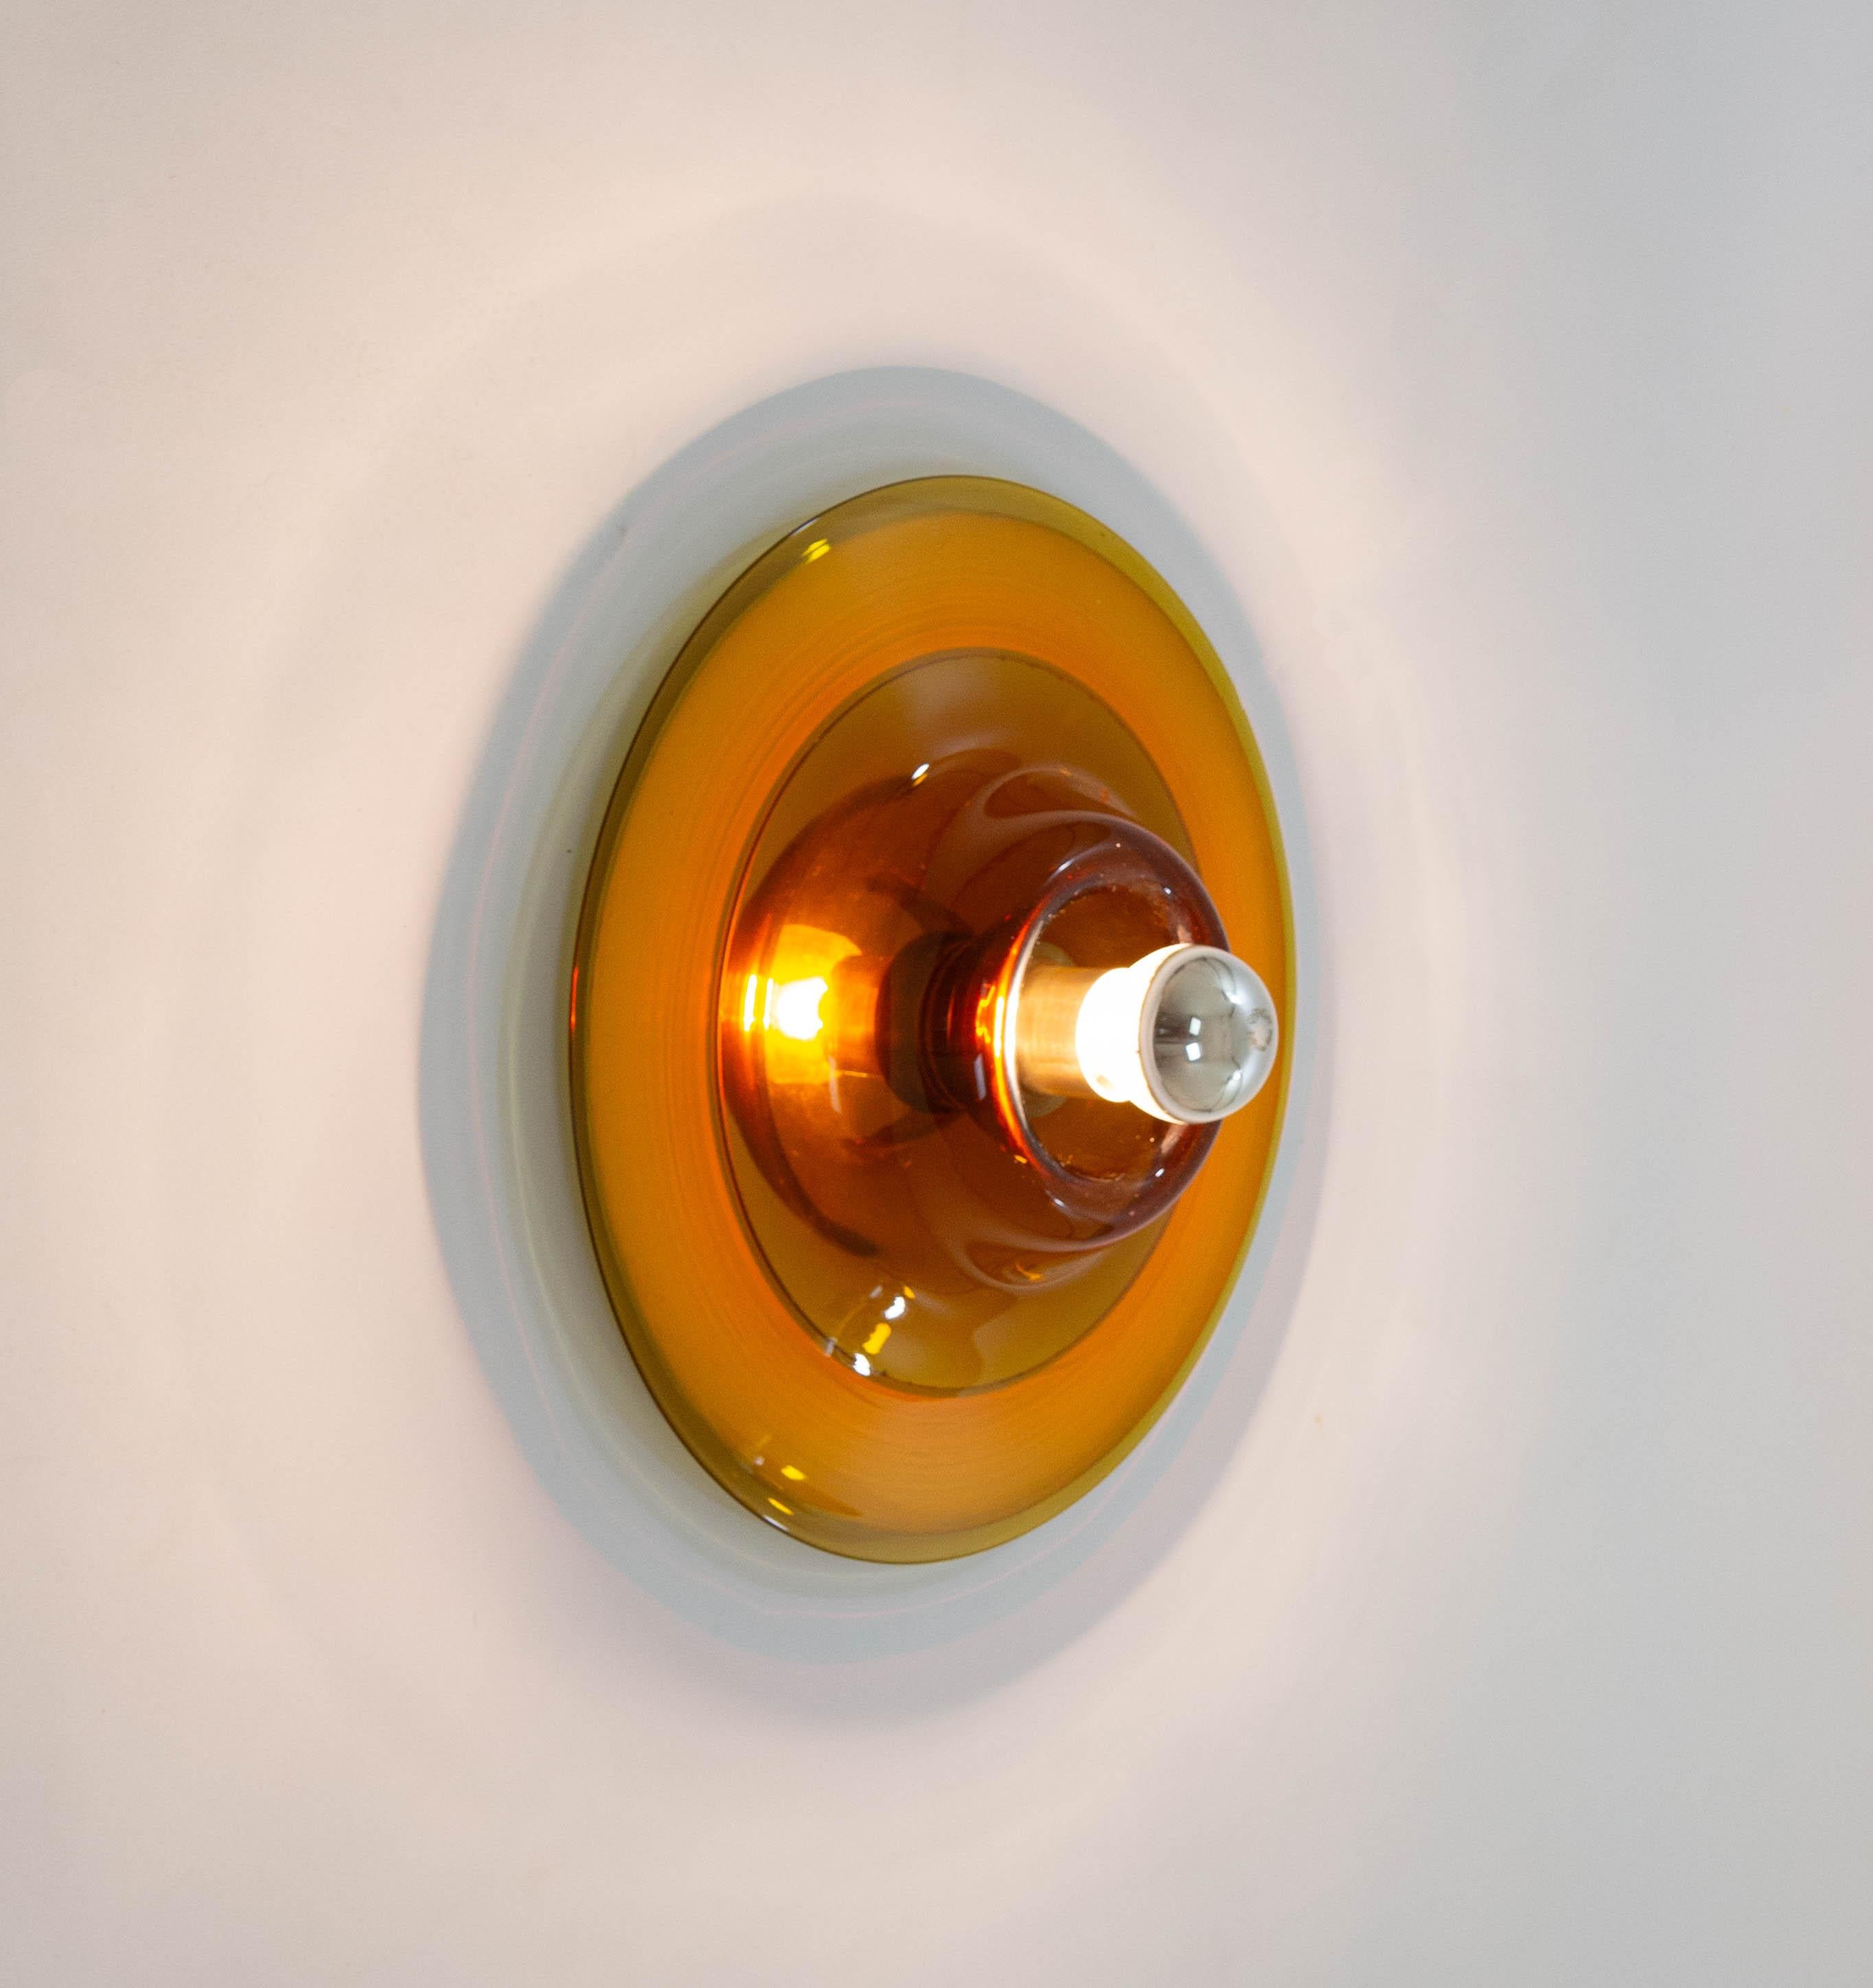 Support mural ou plafonnier no 820 en verre ambré fabriqué par le spécialiste du verre vénitien Venini pour Pierre Cardin, années 1970.

La couche extérieure de la lampe est en verre de Murano qui est soufflé et ouvert à la main. Un petit miroir